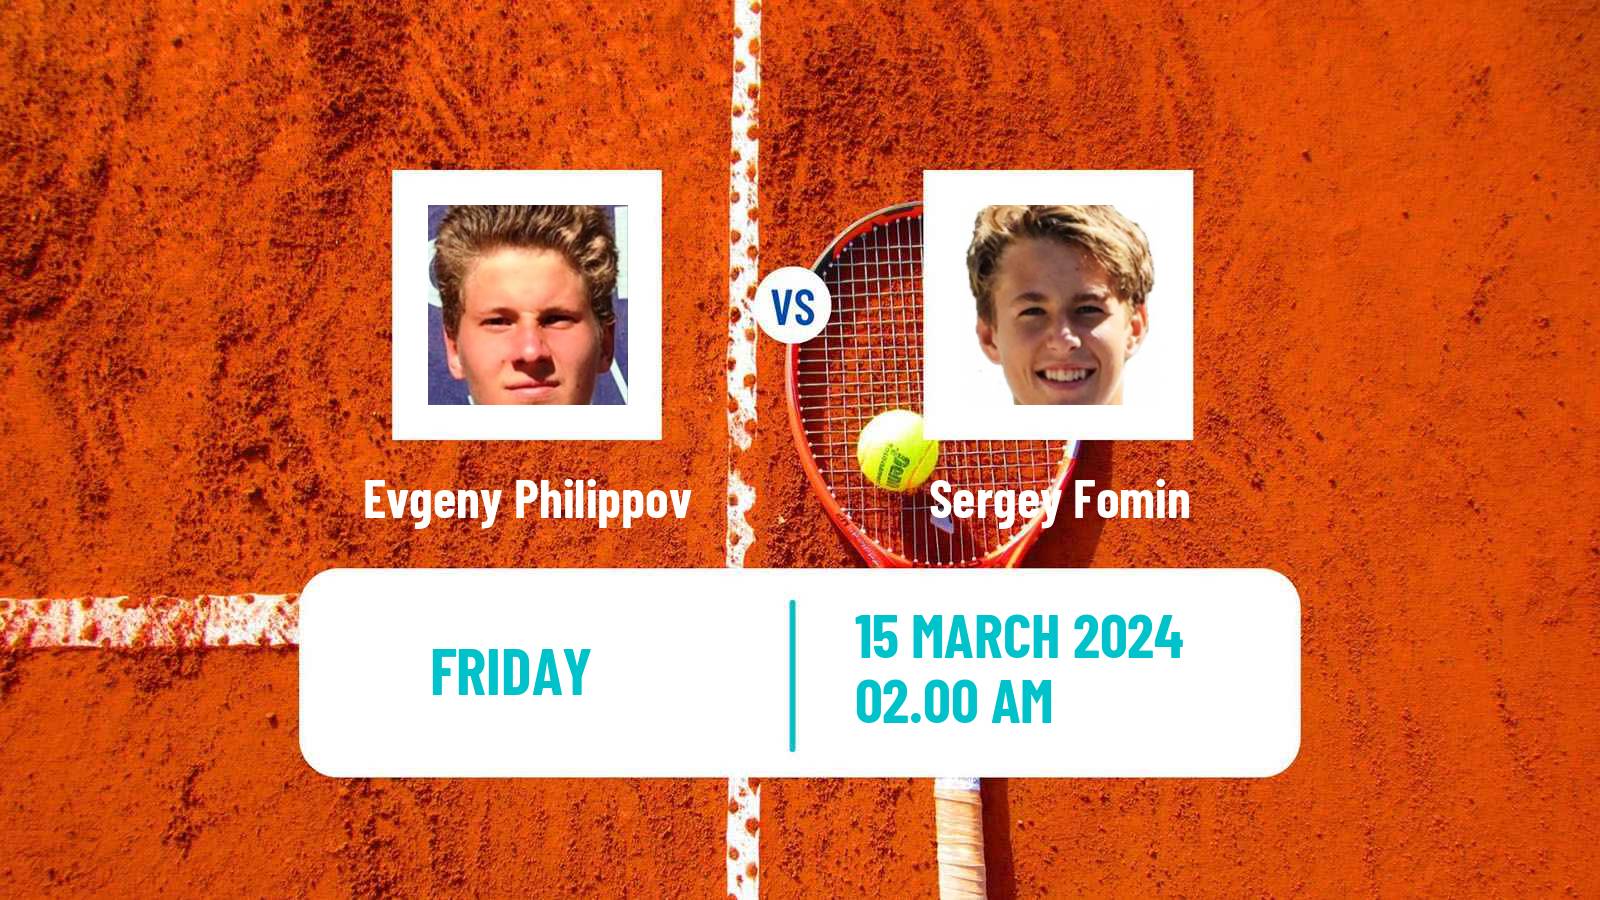 Tennis ITF M15 Aktobe 2 Men Evgeny Philippov - Sergey Fomin